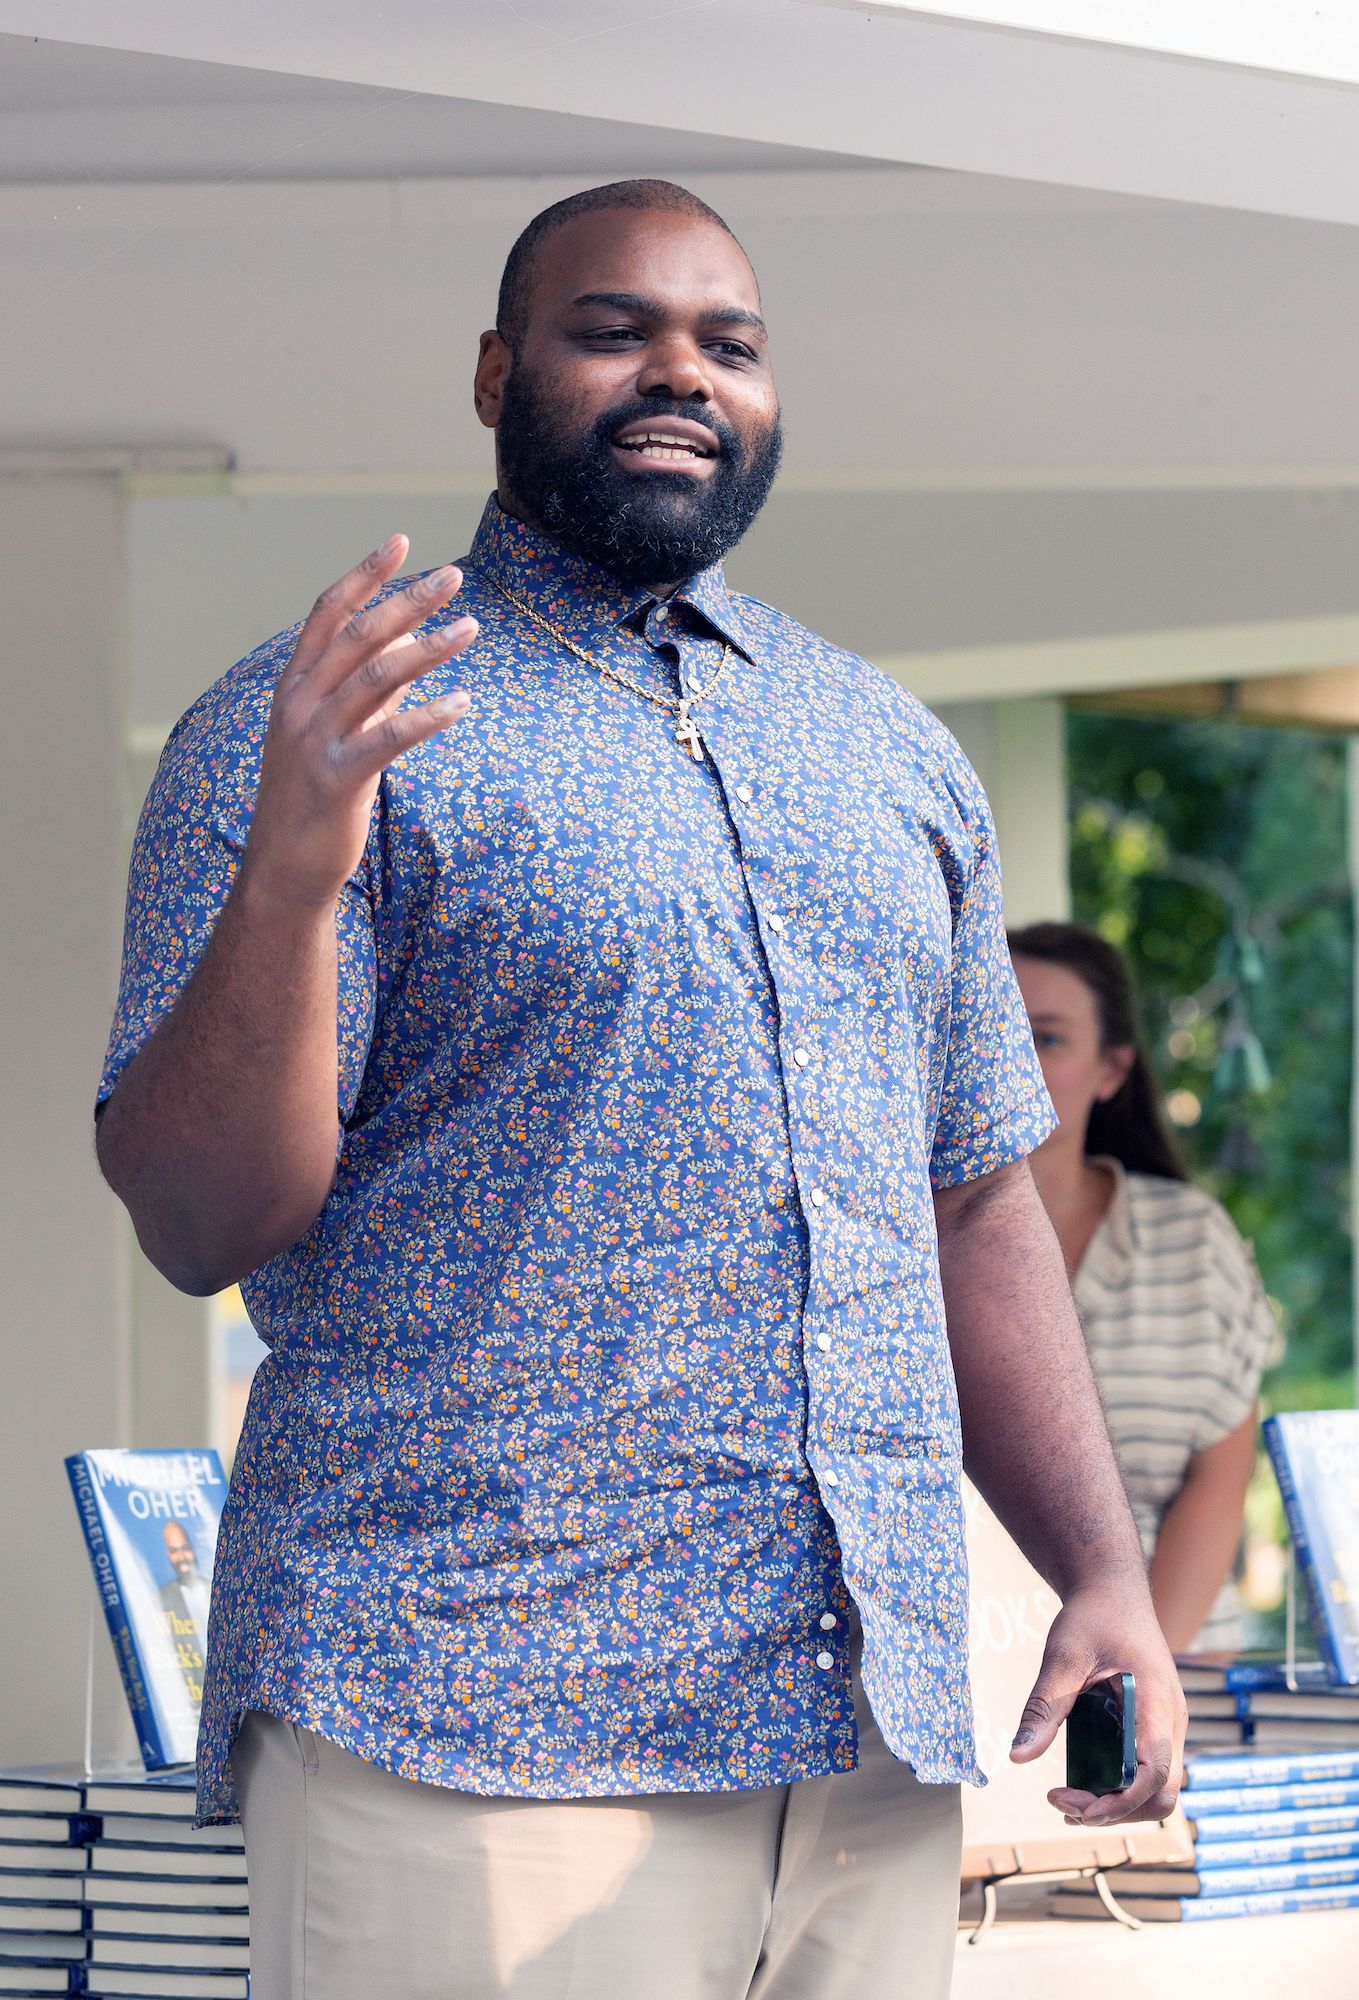 NFL Baltimore Ravens Fans Louis Vuitton Hawaiian Shirt For Men And Women